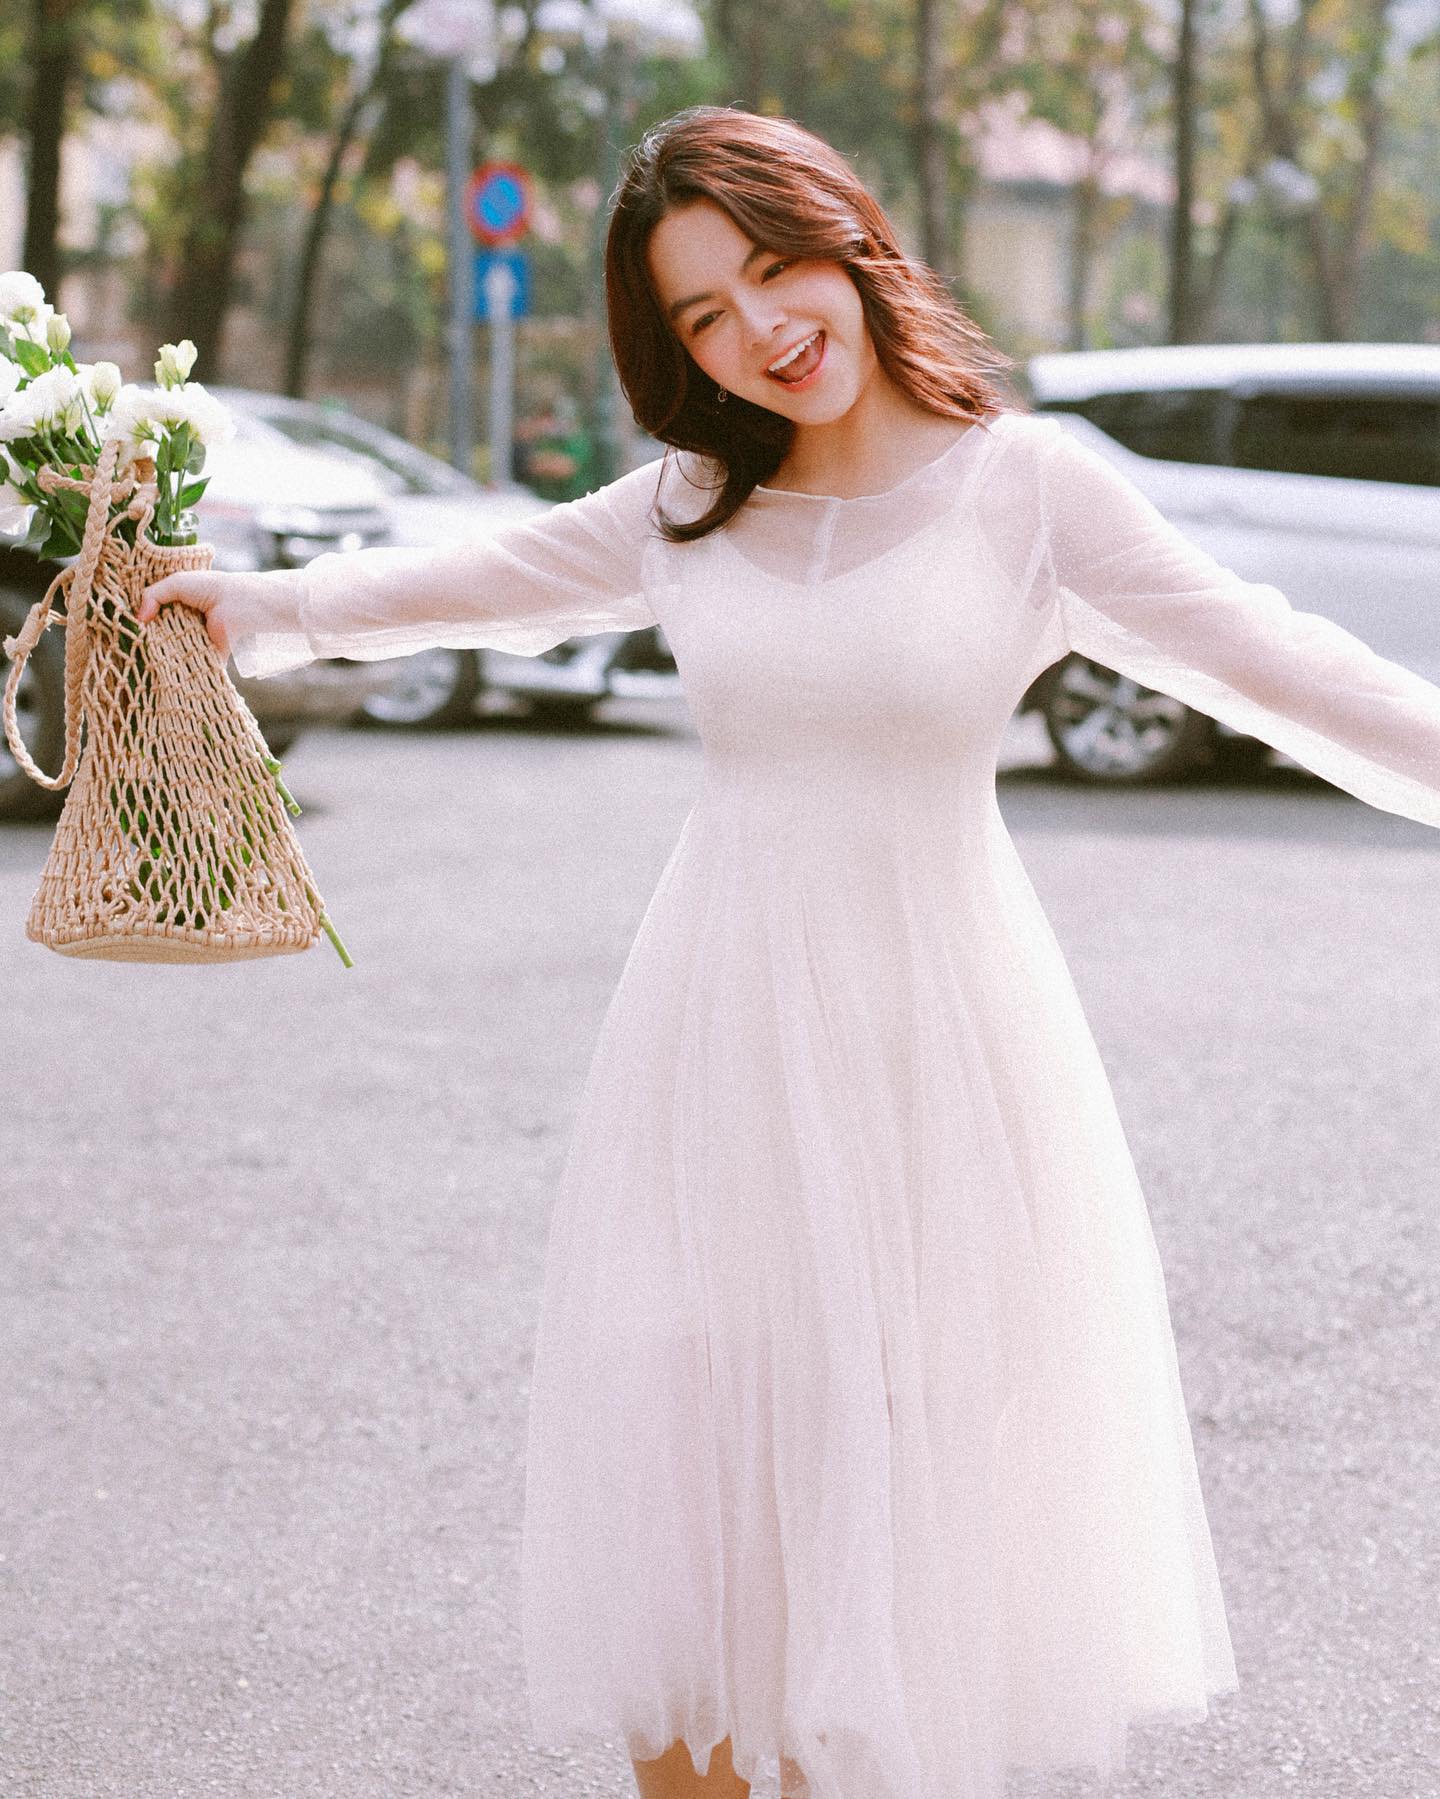 Phạm Quỳnh Anh diện bộ váy trắng nữ tính khoe khéo vòng eo thon gọn.